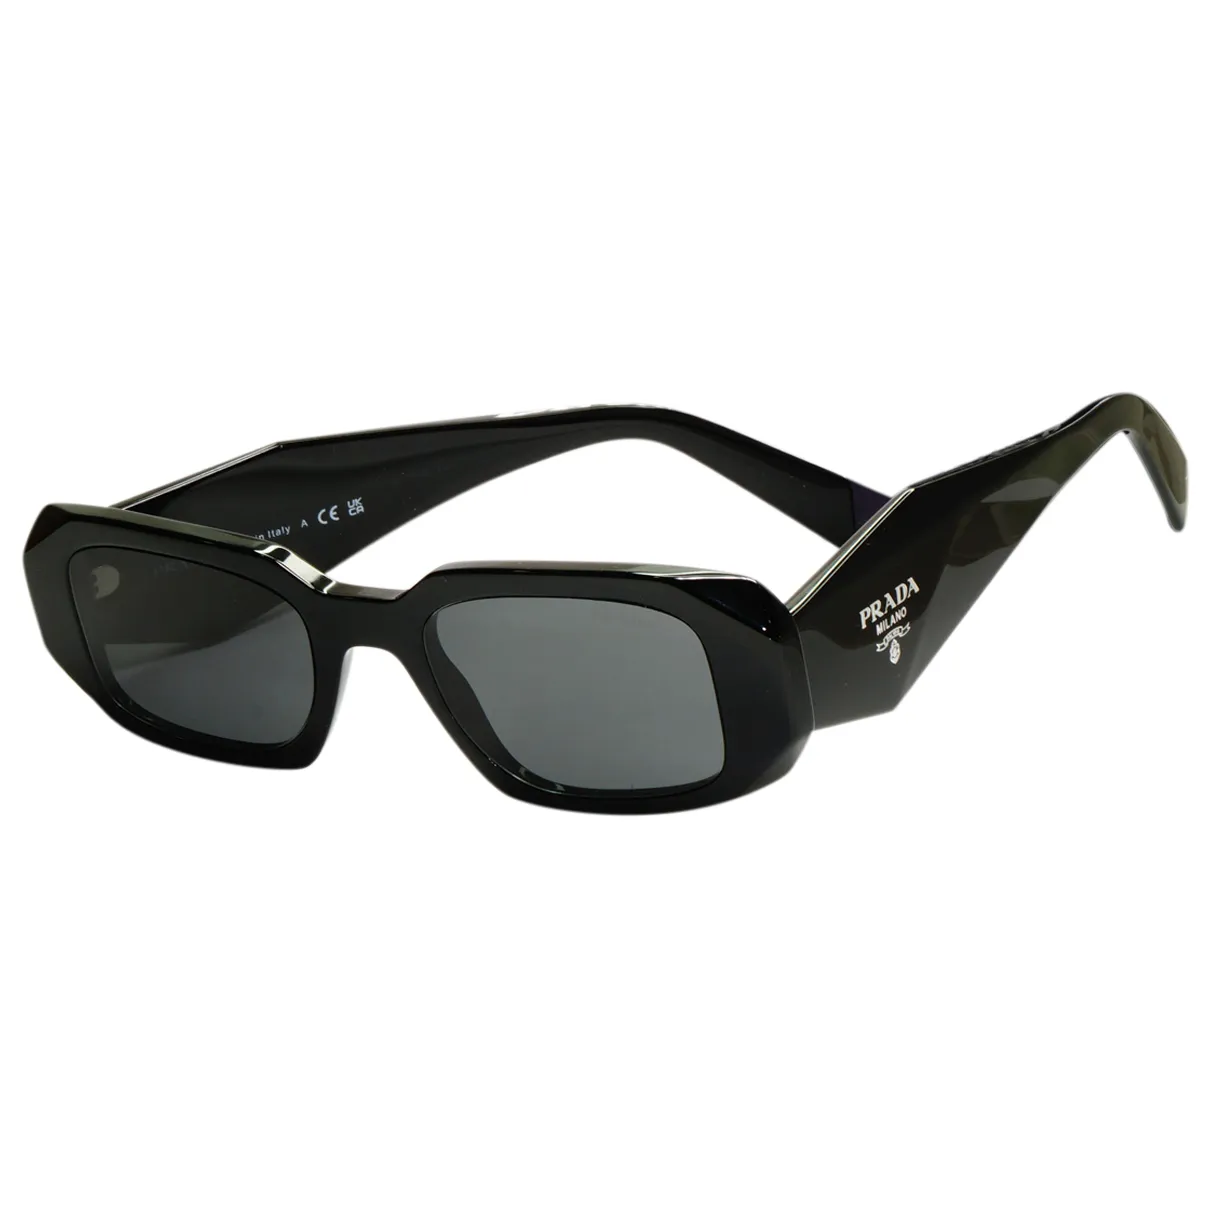 Sunglasses Prada Black in Plastic - 31772356